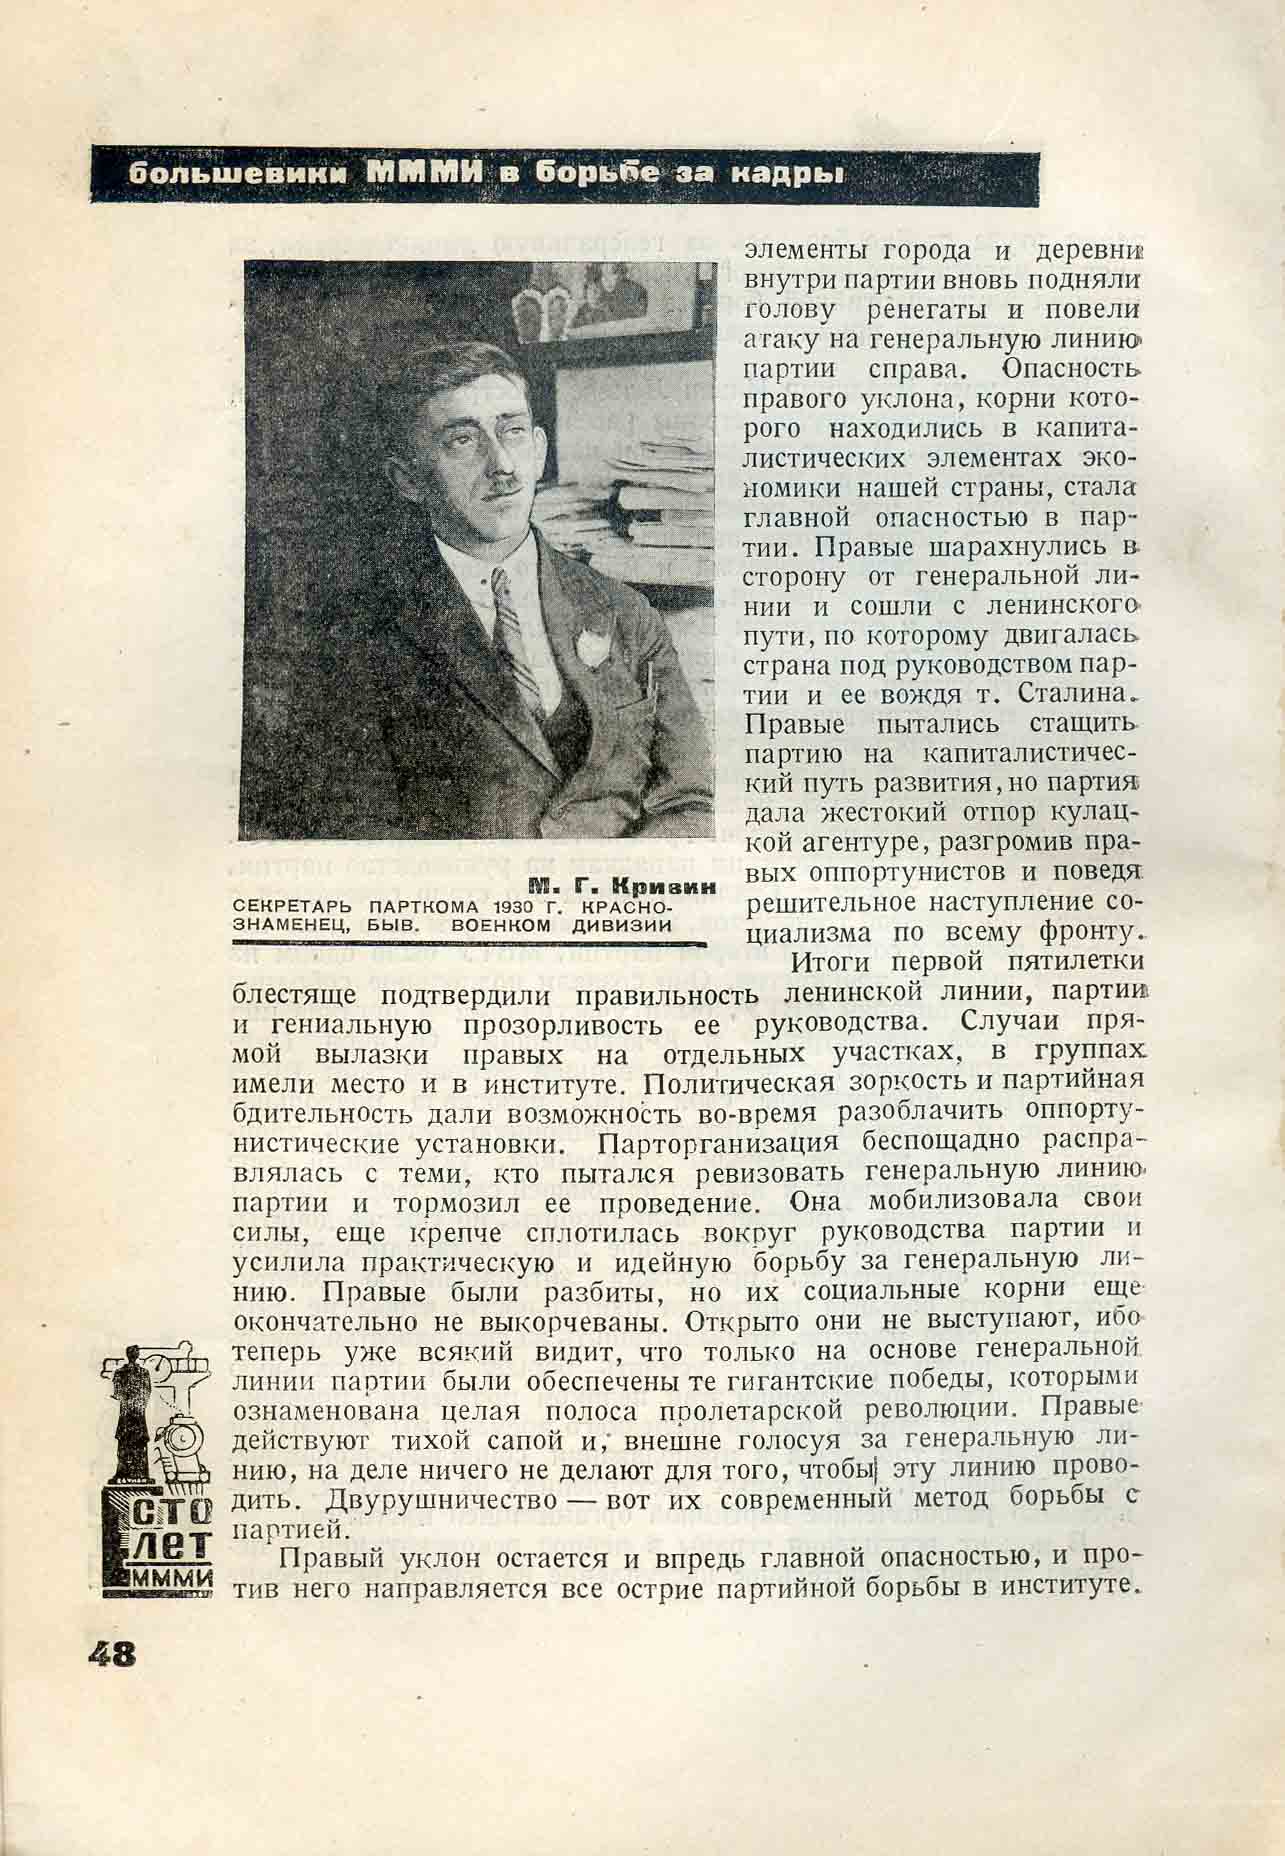 П. Зернов. Статья в Юбилейном сборнике МММИ, 1933